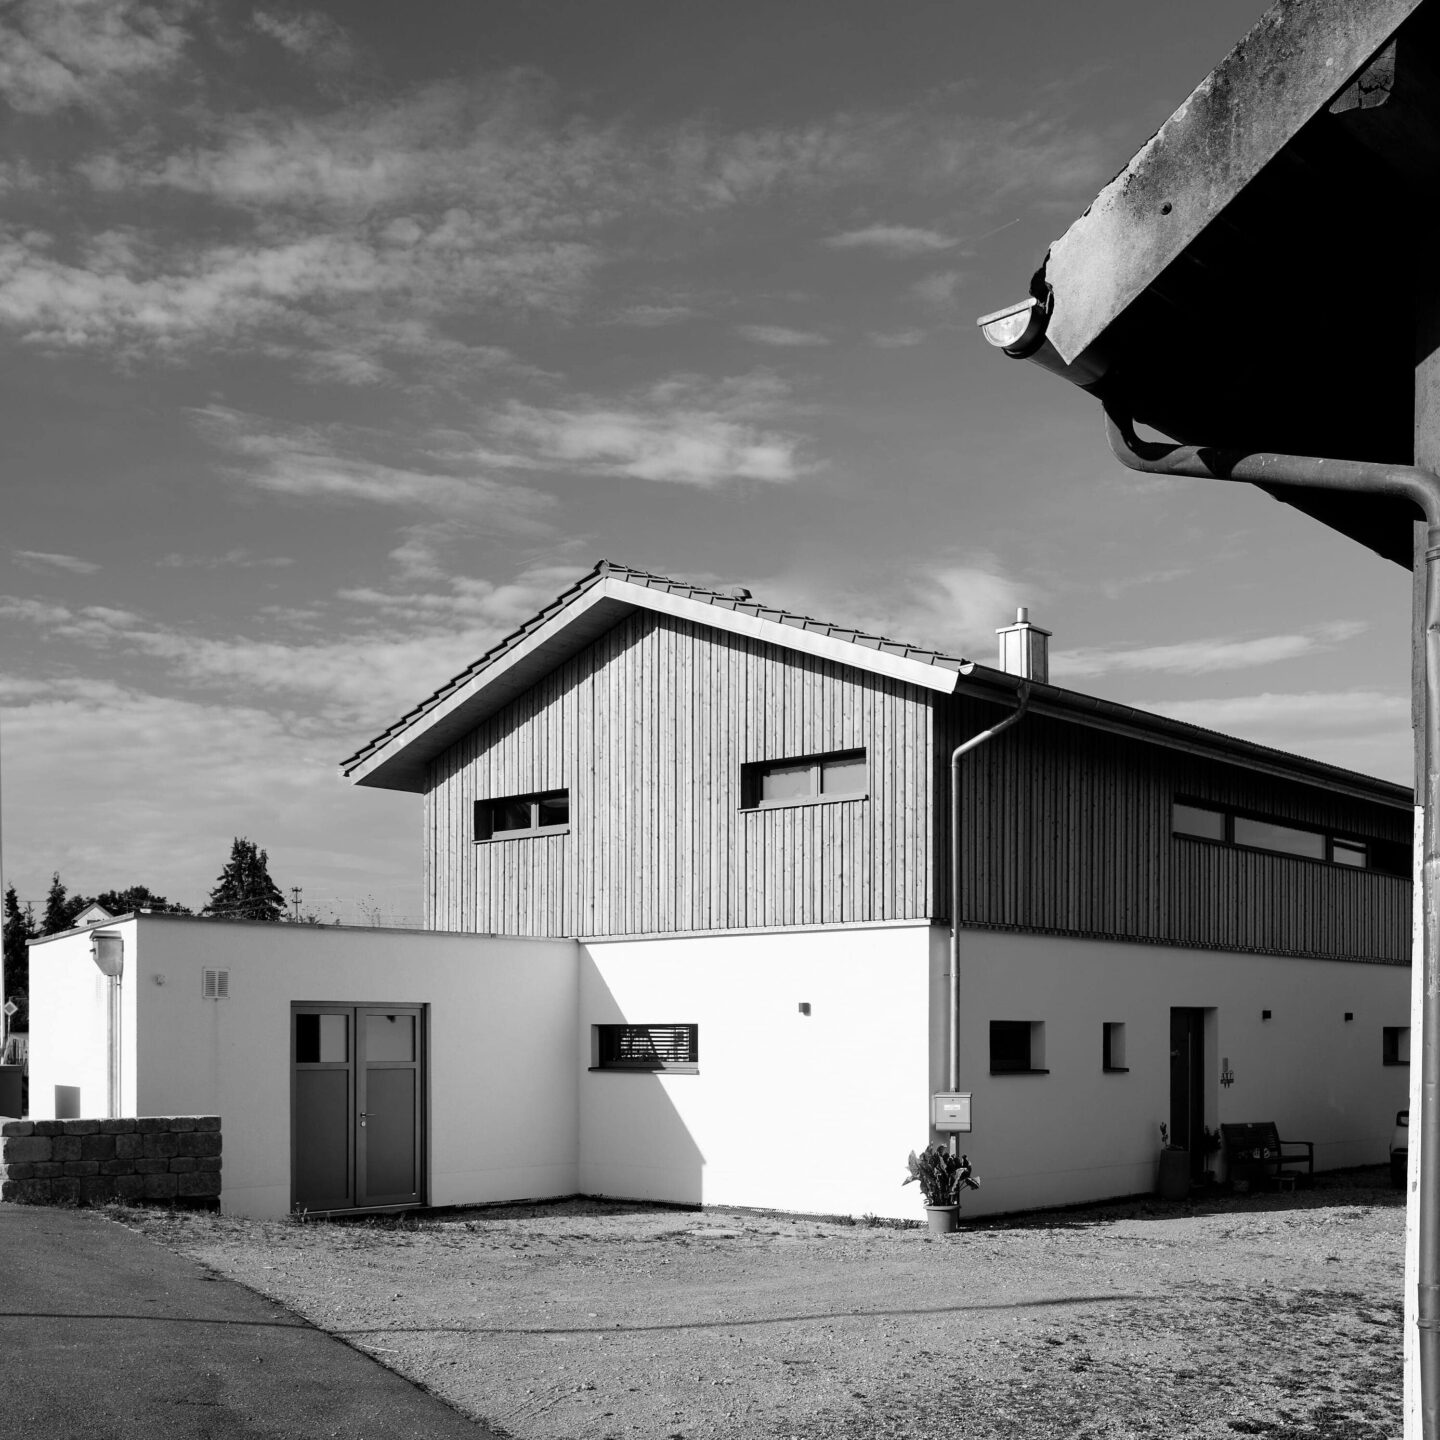 schwarz weiß Bild eines neuen Hauses auf einer alten Hofstelle